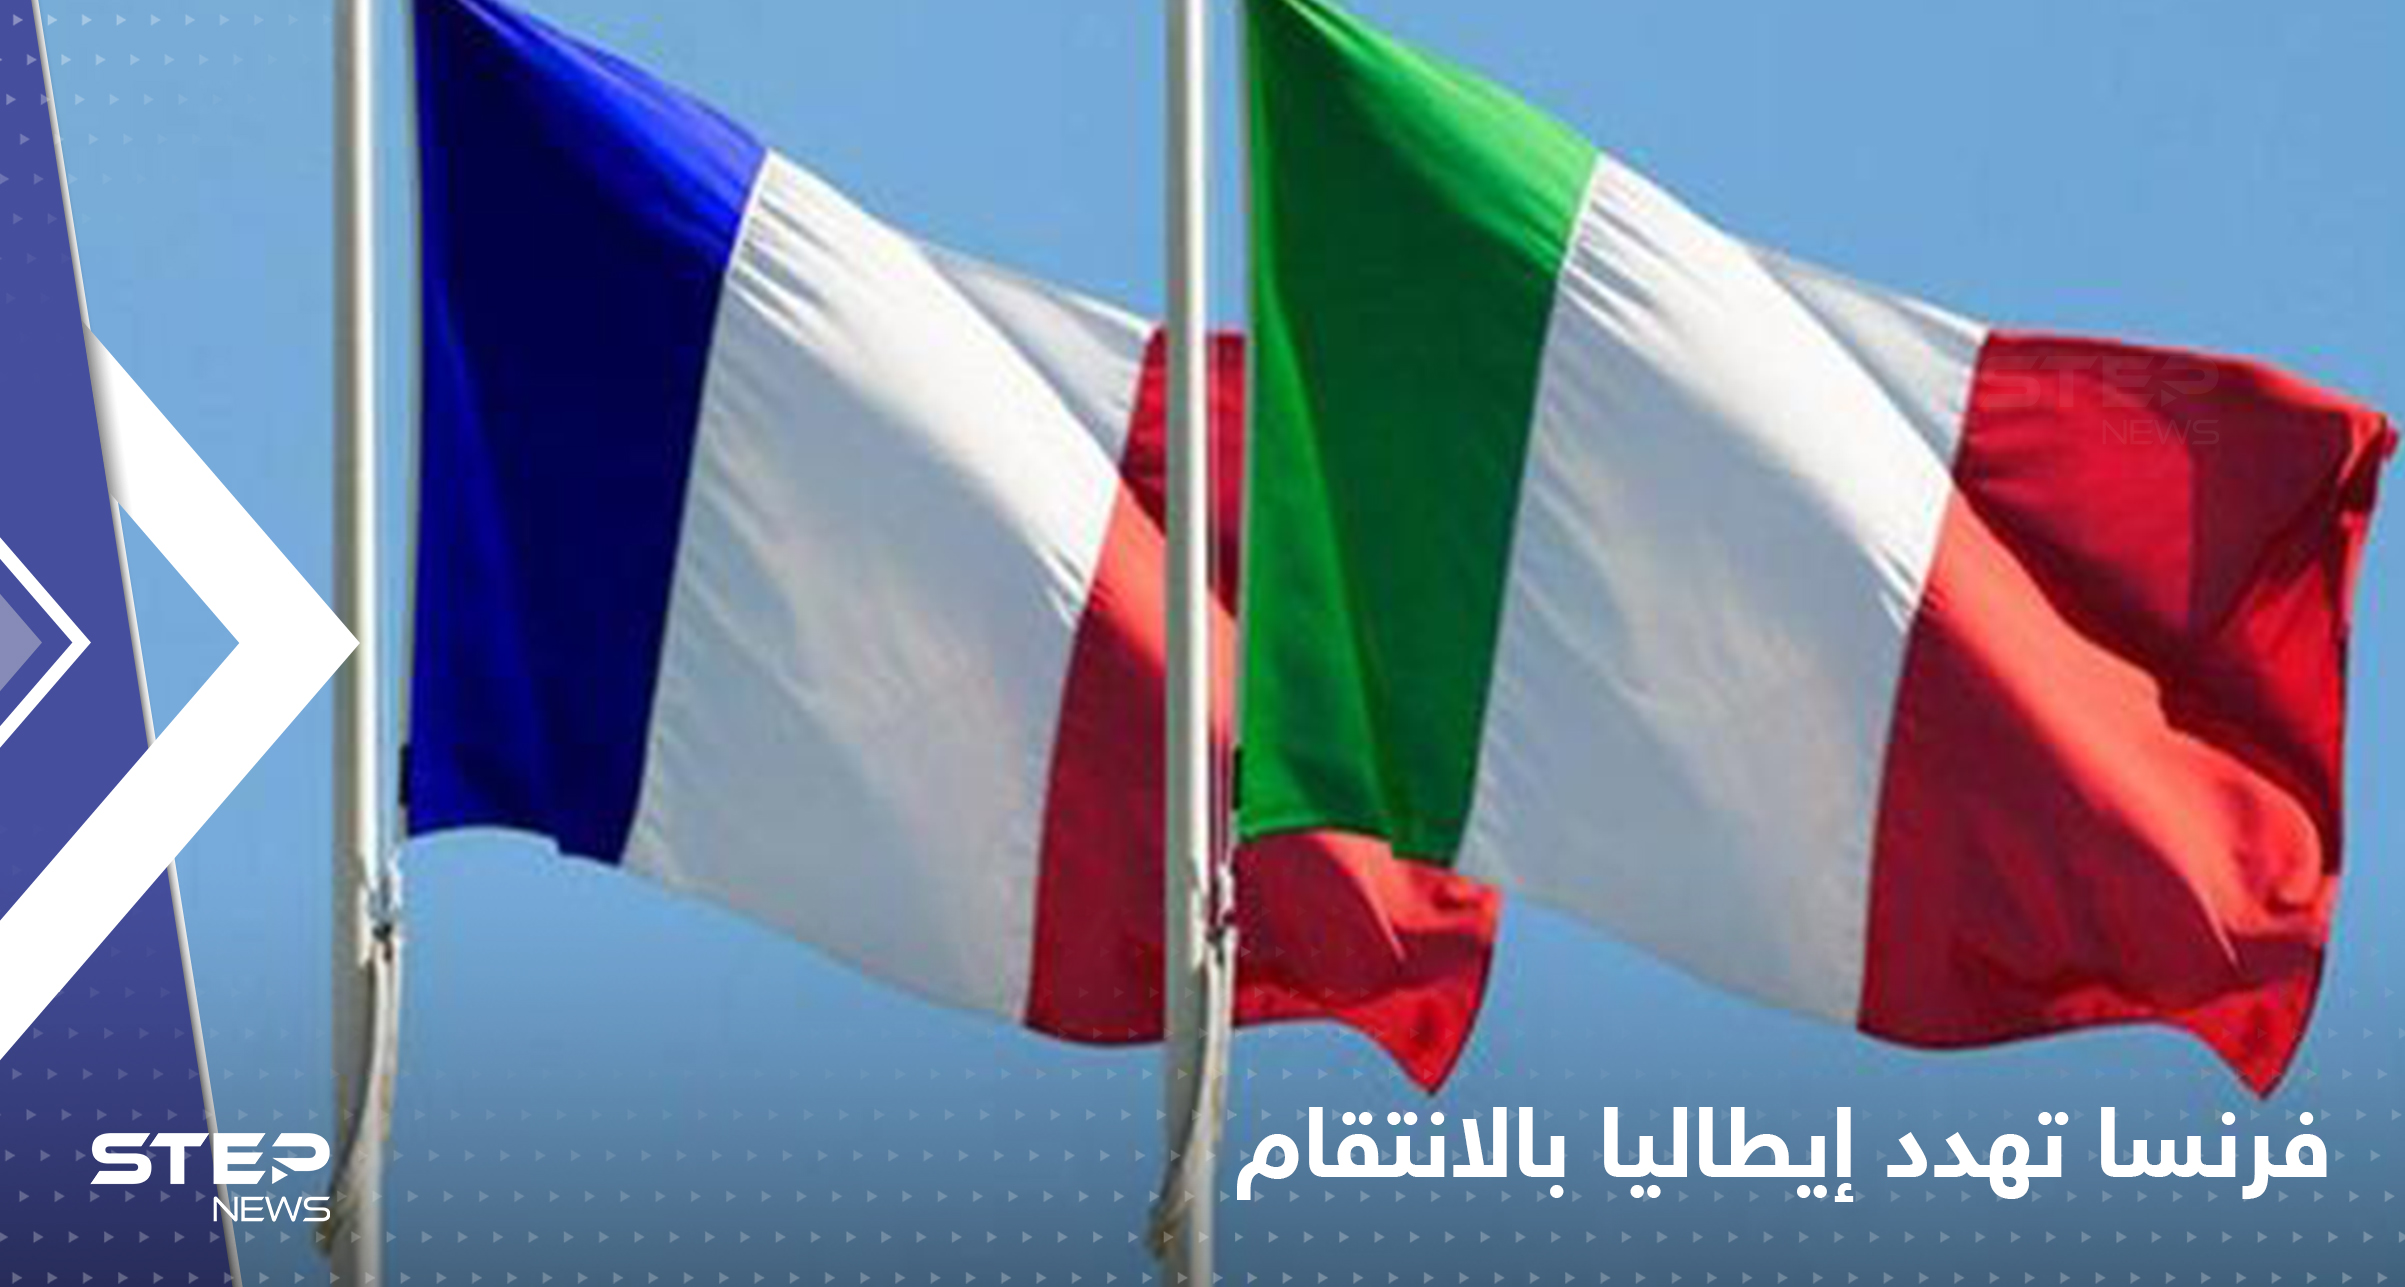 فرنسا تهدد إيطاليا بـ"الانتقام" وتتخذ قراراً سيشعل أزمة أوروبية جديدة شرارتها سفينة مهاجرين 